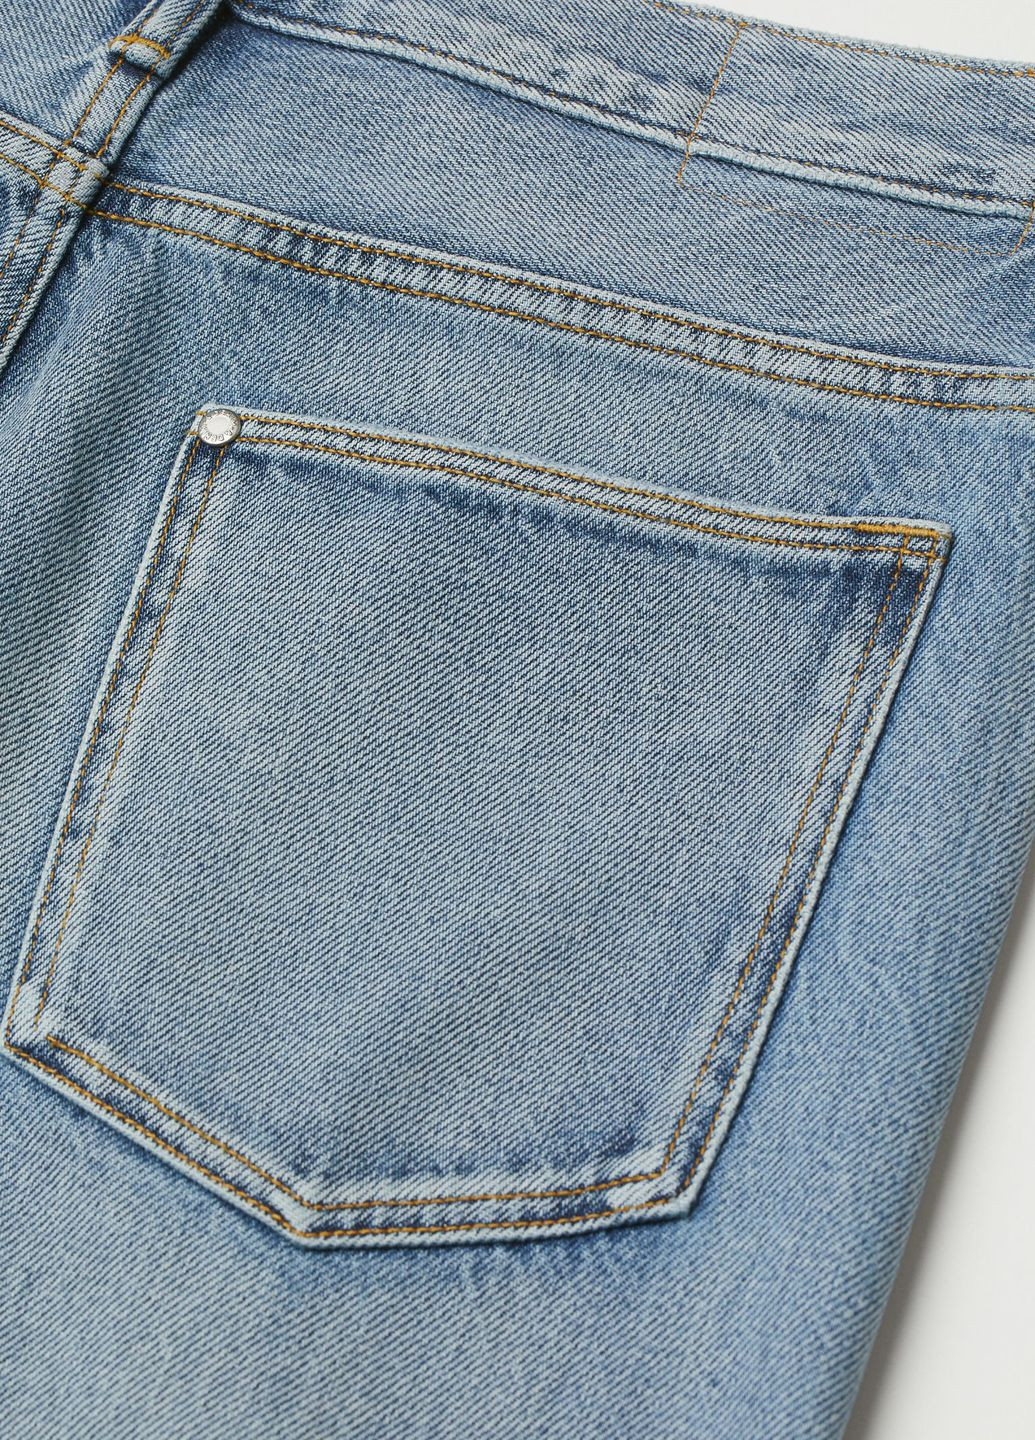 Вільні завужені джинси Синій Денім Демісезон H&M (276534680)